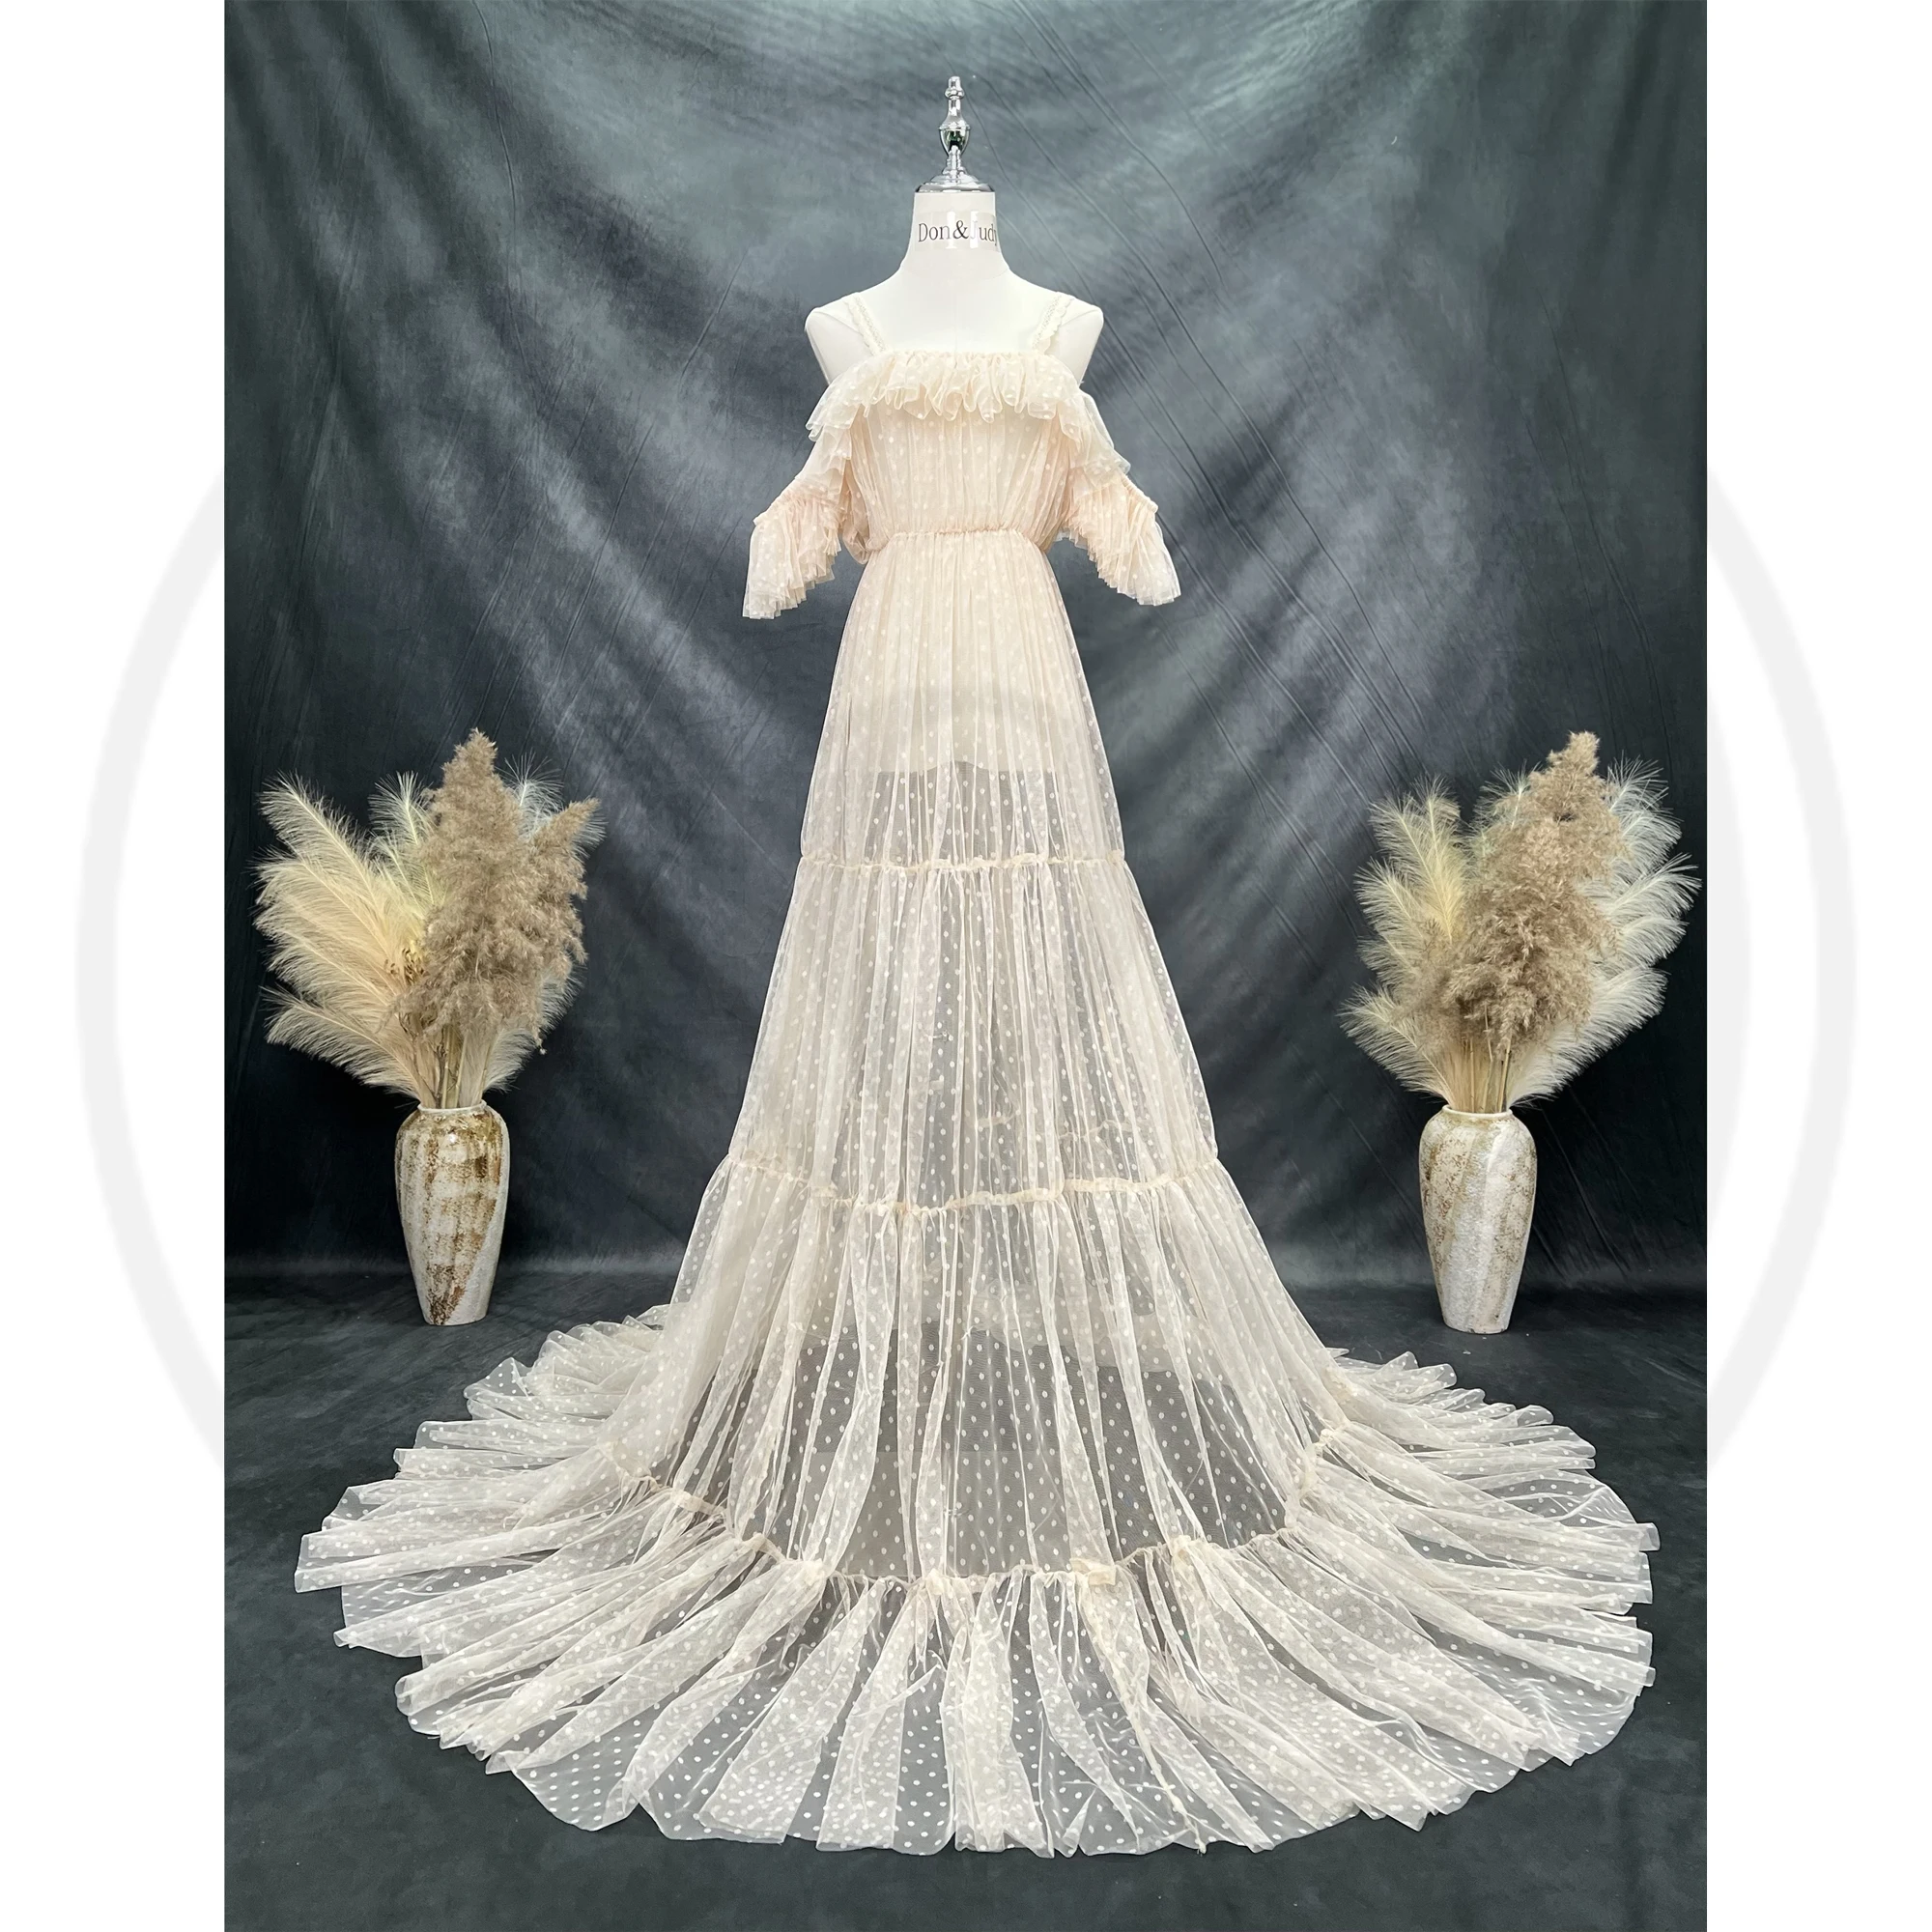 Don & Judy elegancka sukienka ciążowa tiulowa sukienka fotograficzna wesele Baby Shower kobiety sesja zdjęciowa rekwizyty niestandardowe